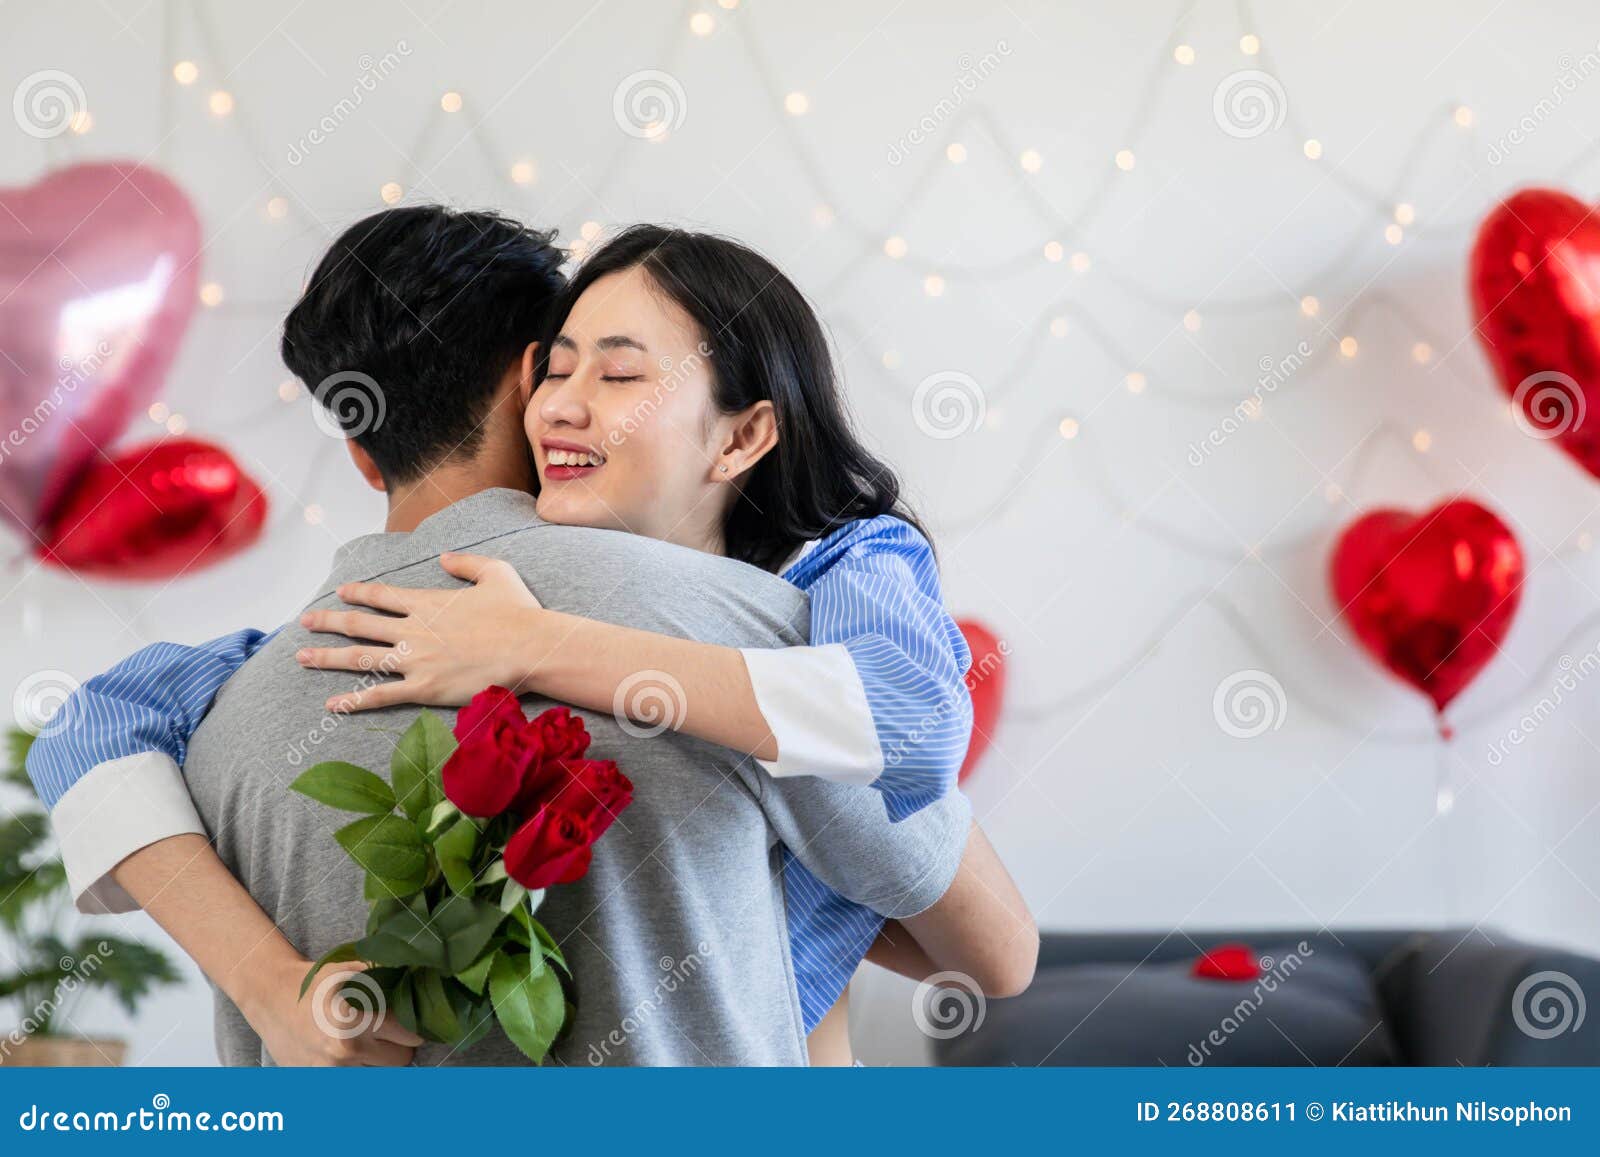 пара влюблена в обнимание в спальне с розами и подарочными подарками.